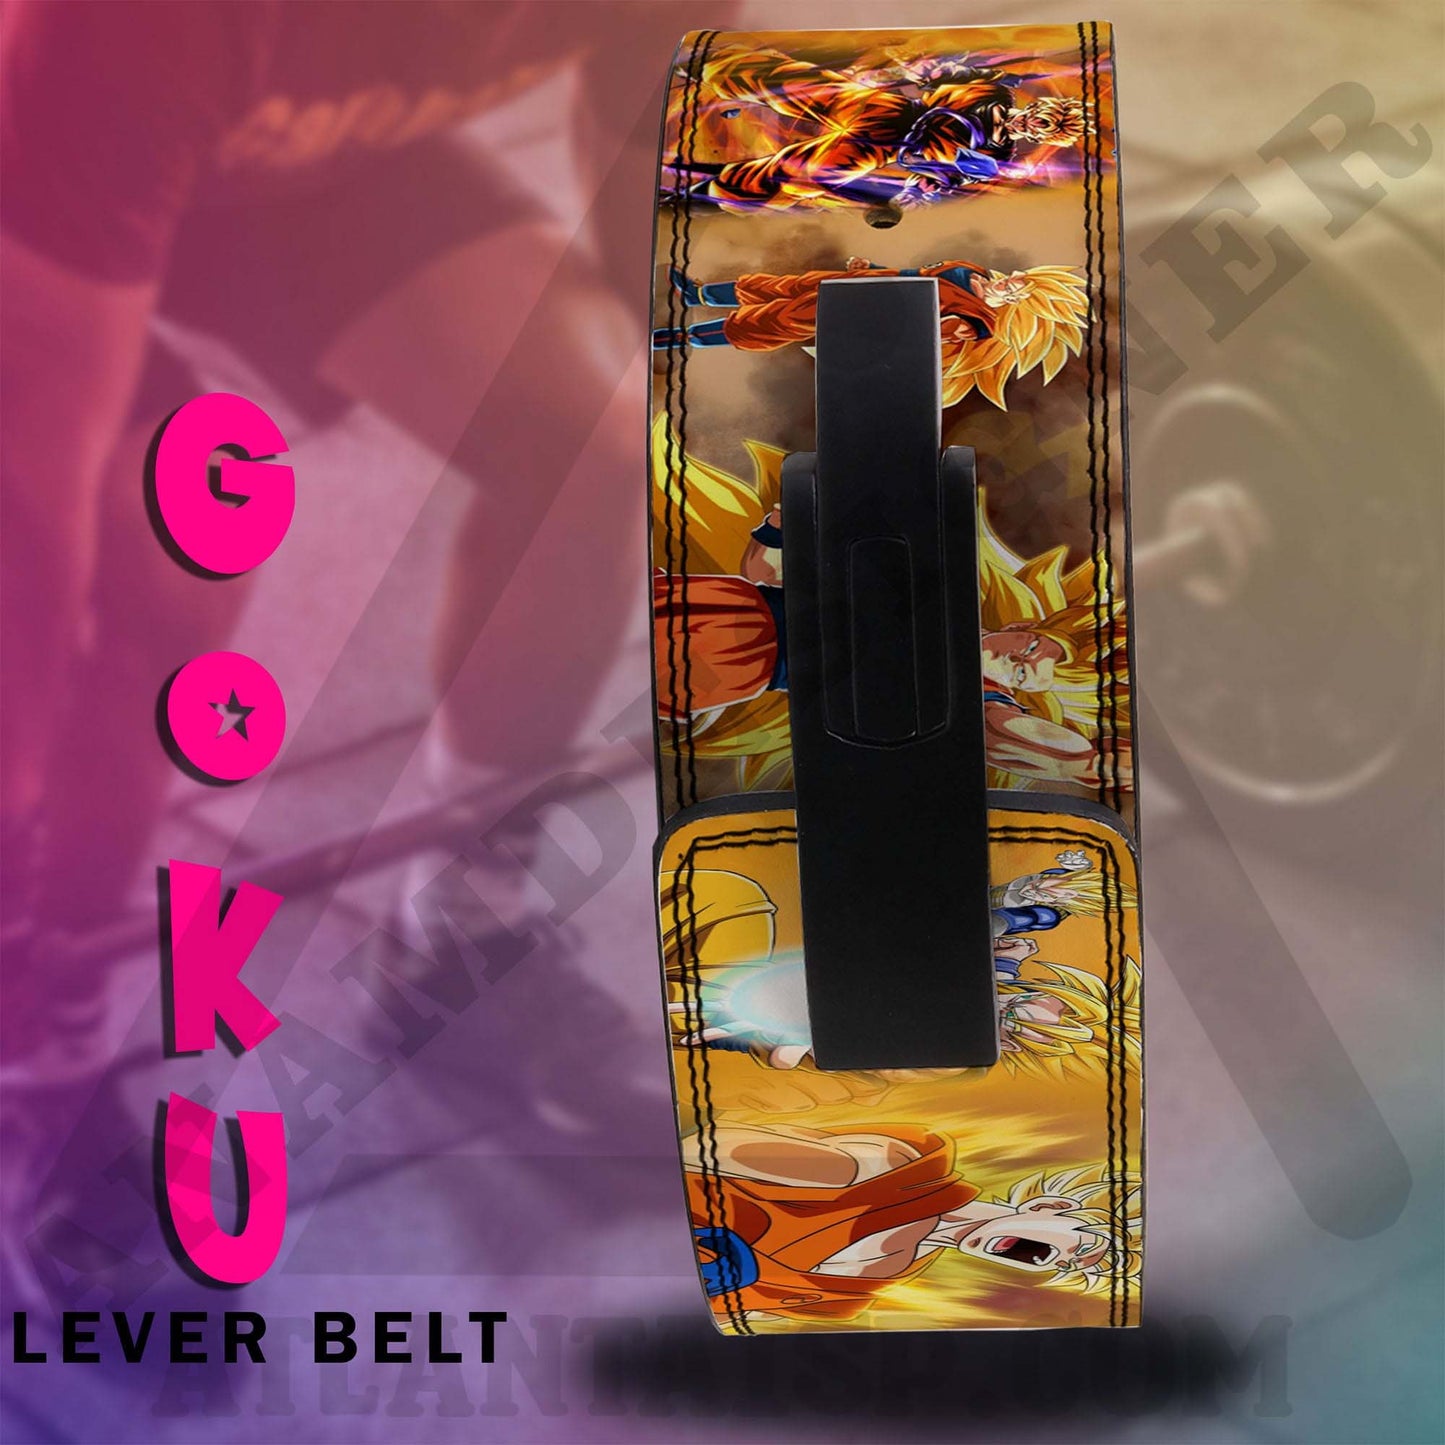 Dragon Ball Z Anime Lever Belt | Powerlifting belt | DBZ Lever Lifting belt Anime Vegeta Gym Belt | Goku Weightlifting belt| Goku Lever Belt